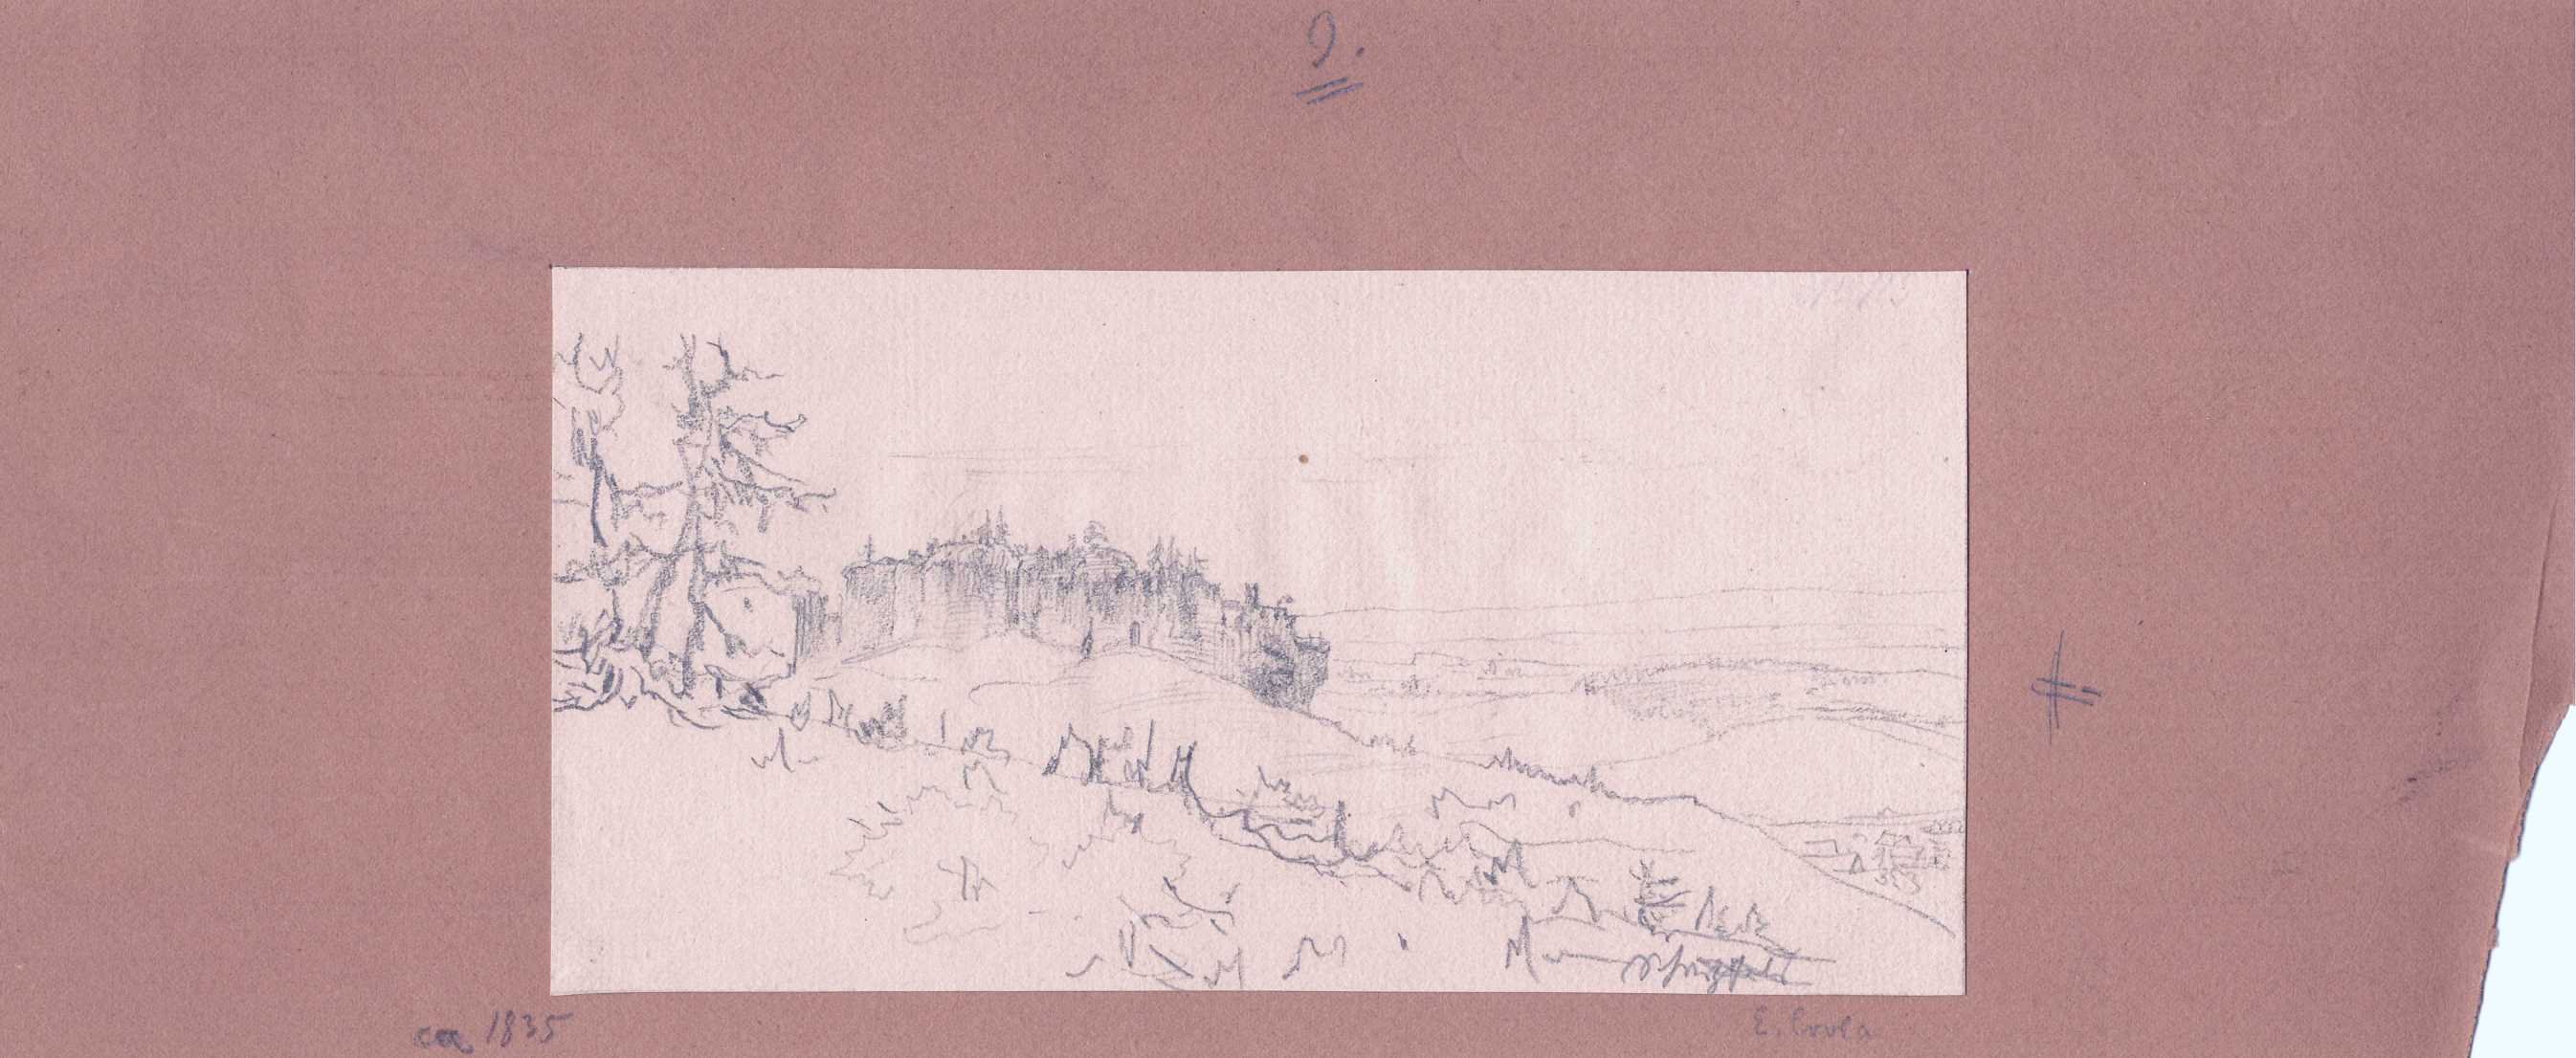 Ruine der Burg Scharzfels aus der Ferne, von Elise Crola, nach 1840 (Schloß Wernigerode GmbH RR-F)